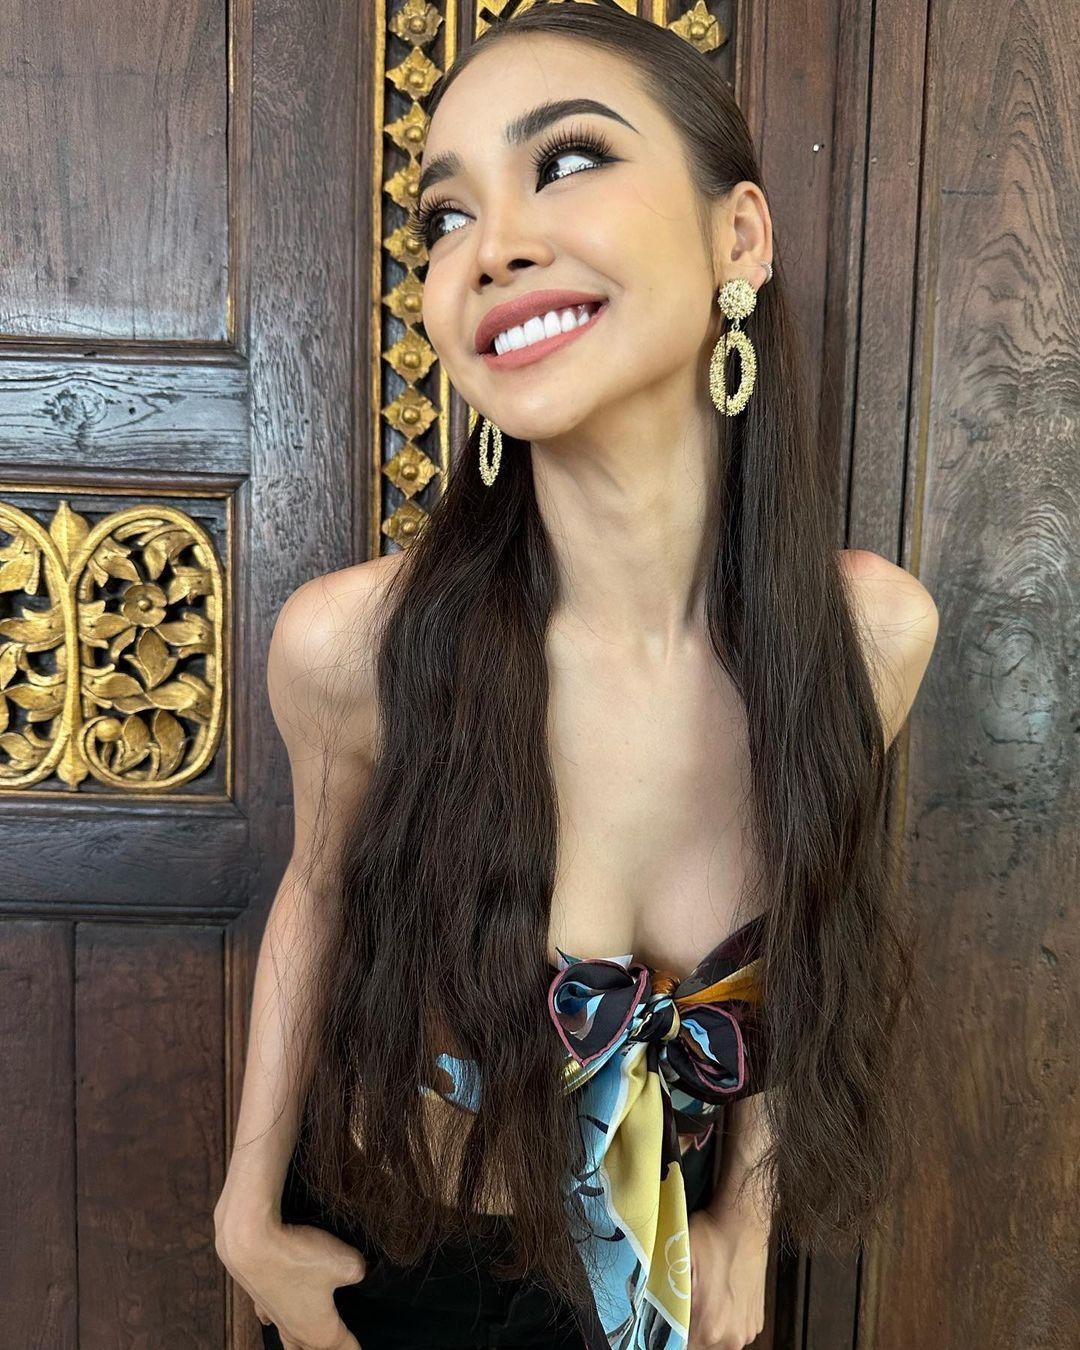 Thân hình đồng hồ cát của Hoa hậu Hòa bình Thái Lan - Ảnh 4.